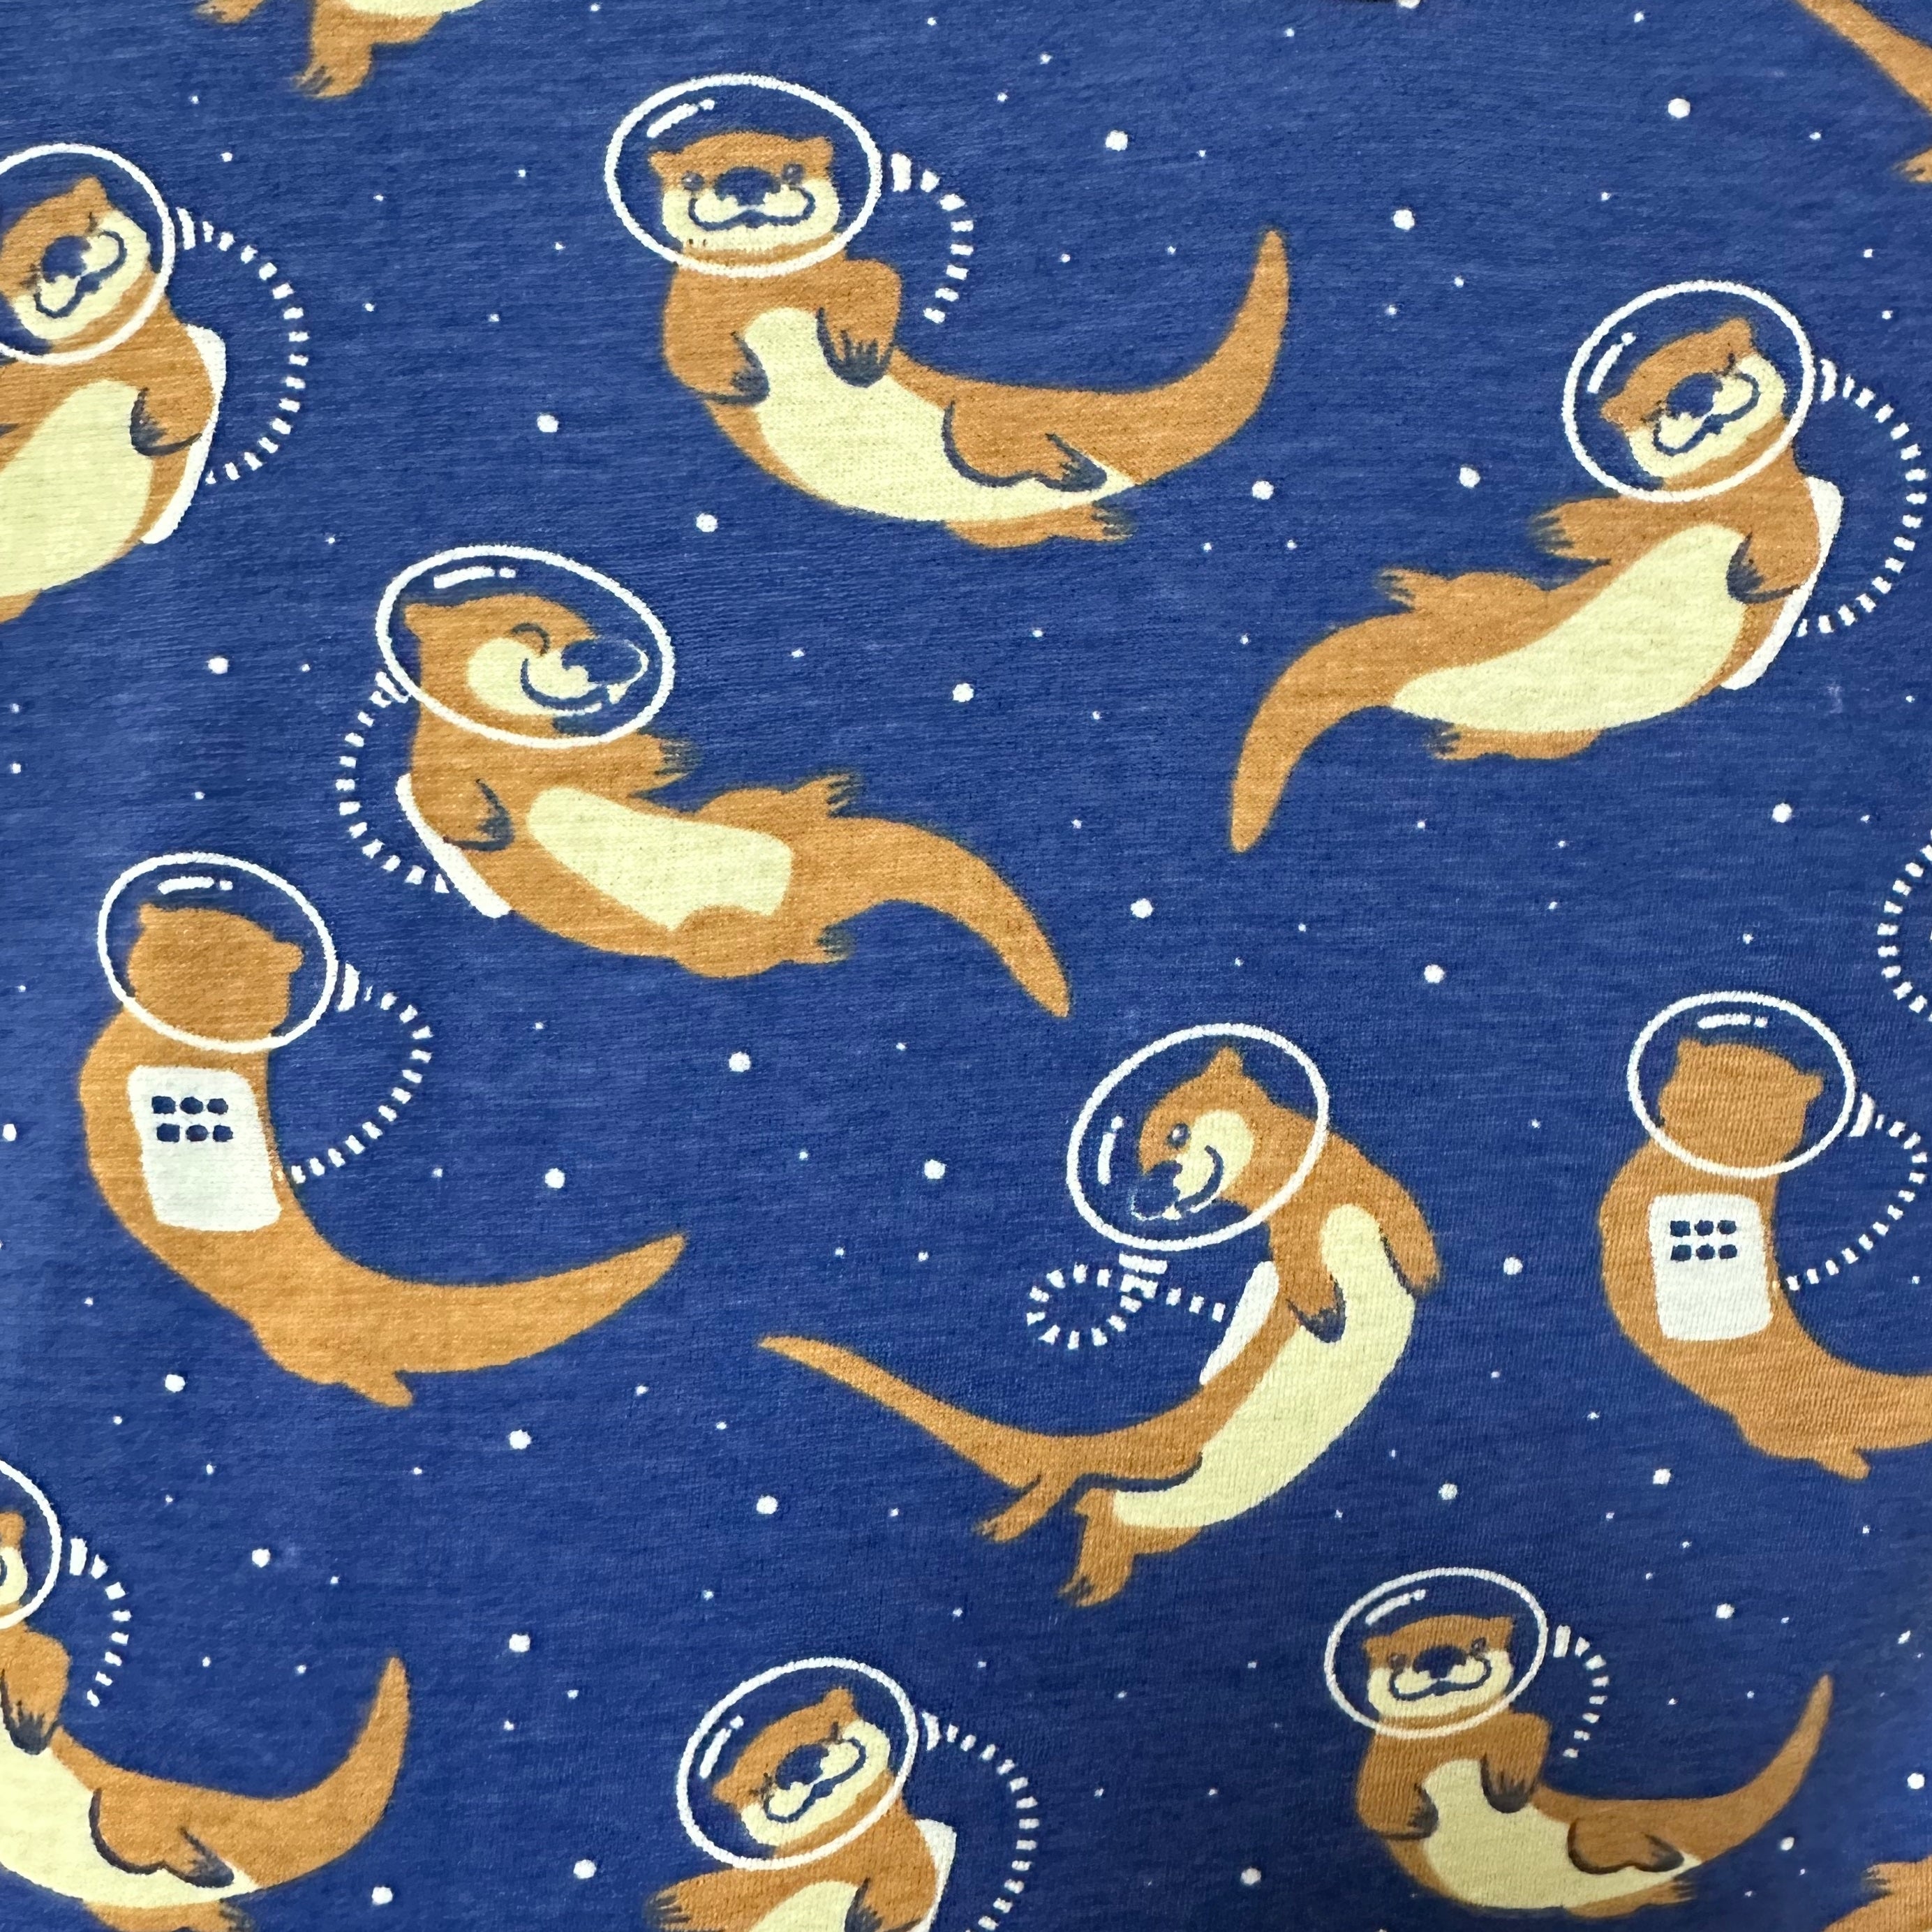 Otters in Space Kids Twirl Dress